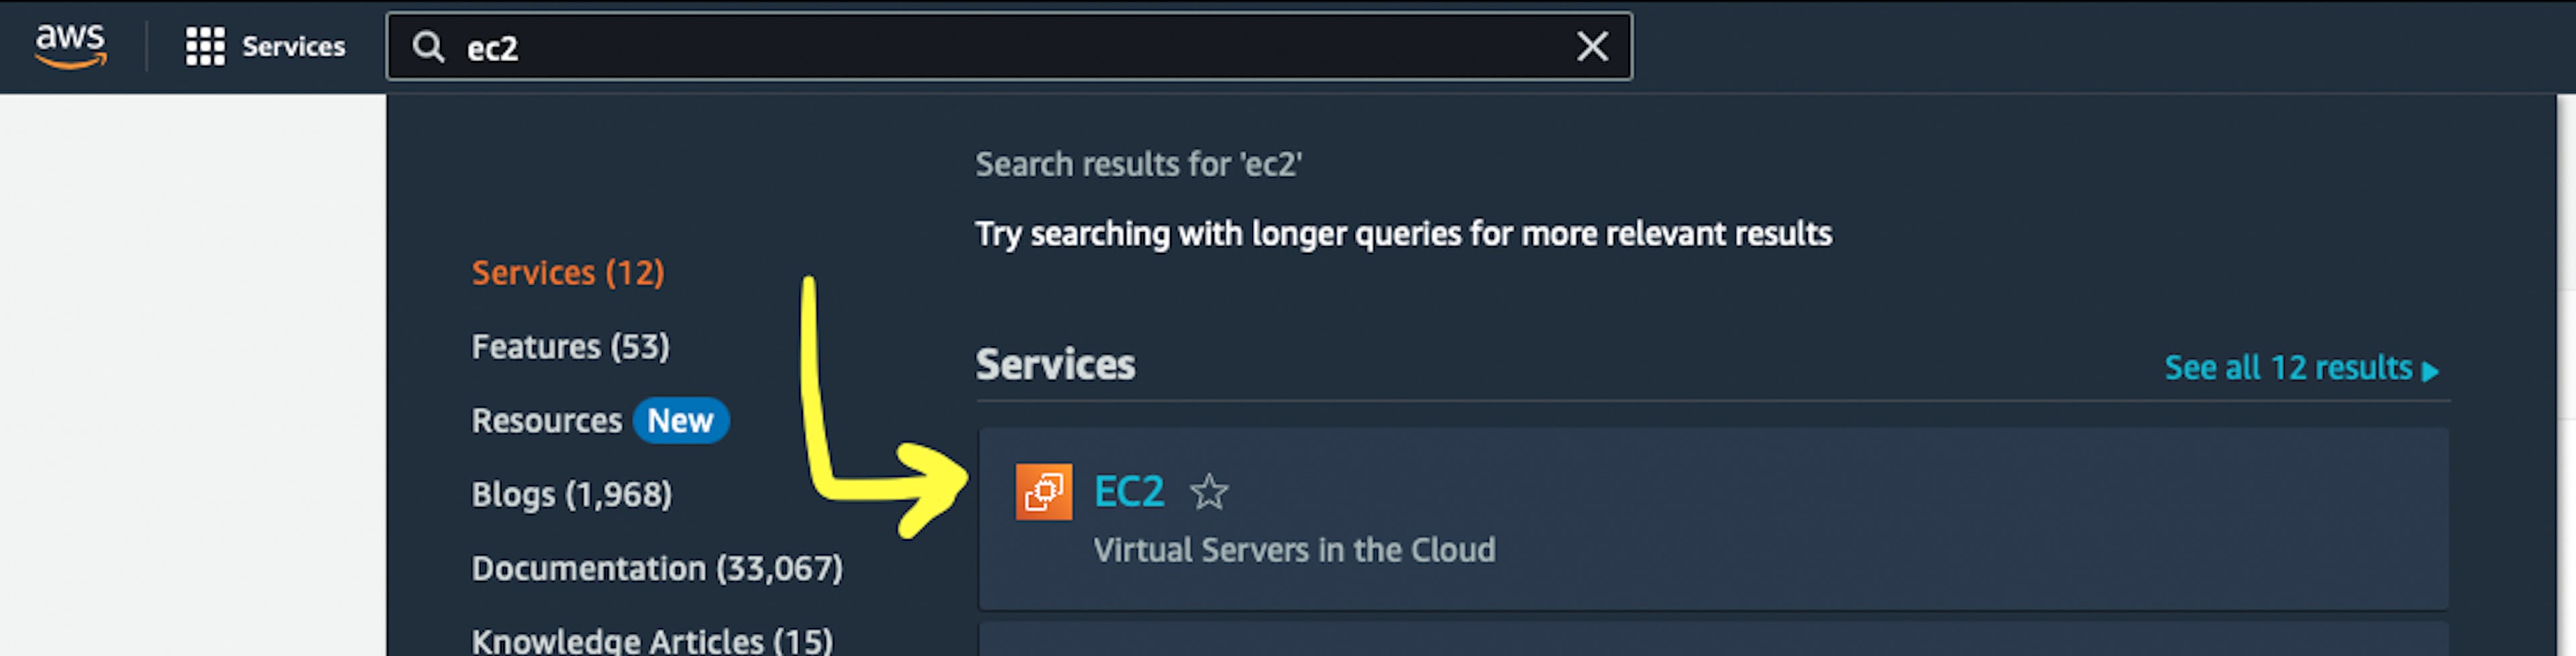 「EC2」AWS サービスへのポインタが表示された AWS Web ページのスクリーンショット